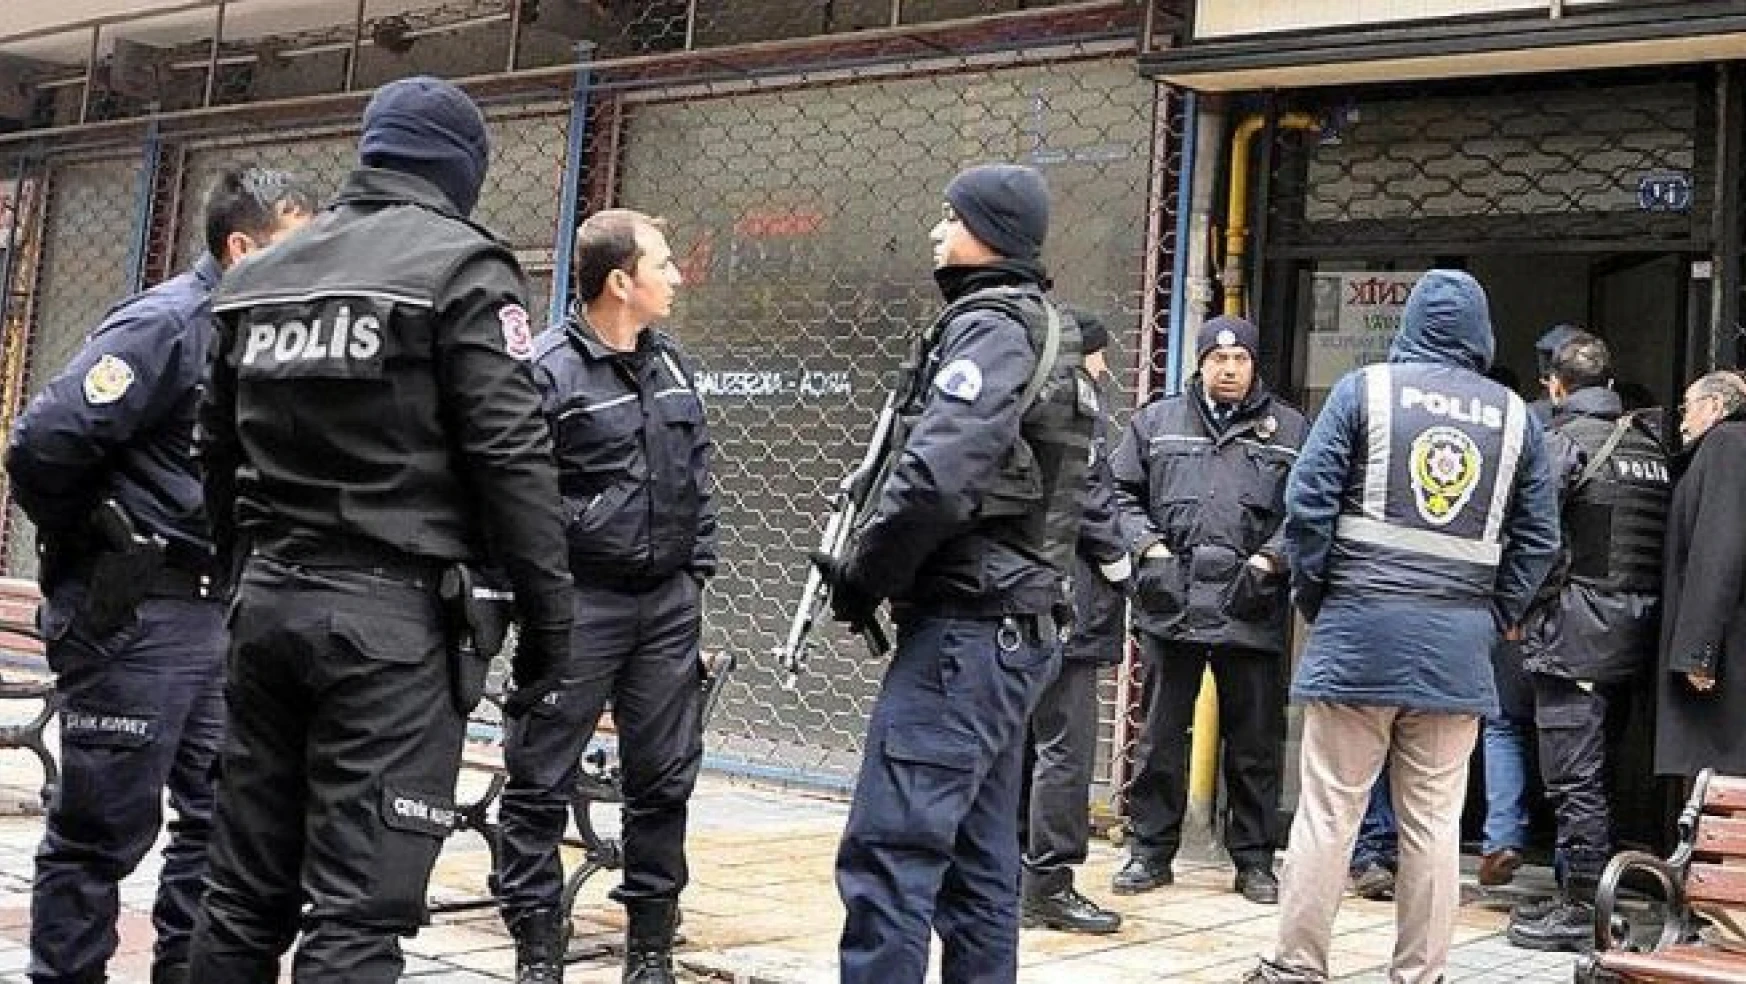 Gaziantep'teki FETÖ/PDY operasyonunda 7 kişi gözaltına alındı